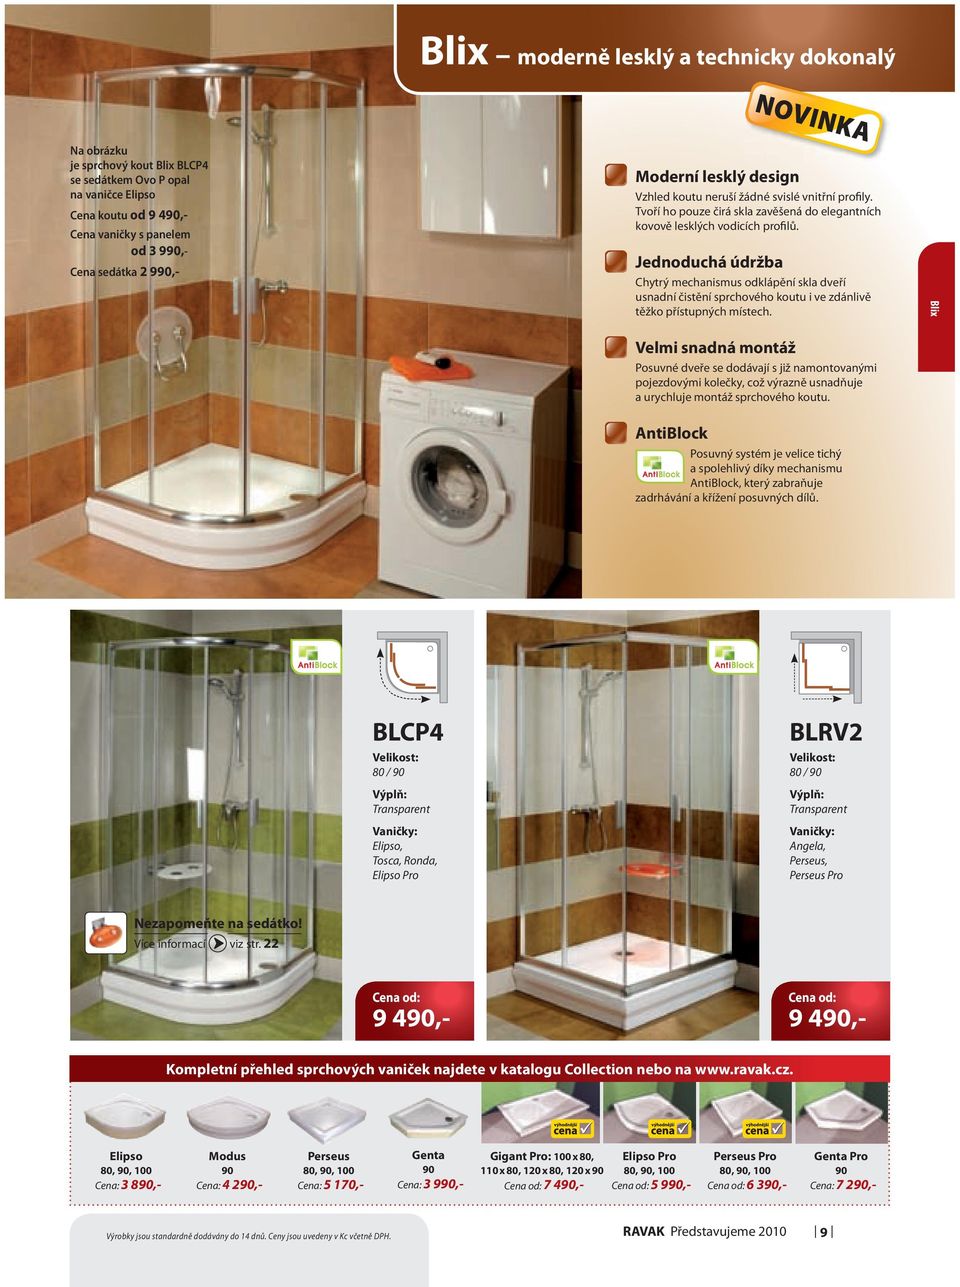 Jednoduchá údržba Chytrý mechanismus odklápění skla dveří usnadní čistění sprchového koutu i ve zdánlivě těžko přístupných místech.